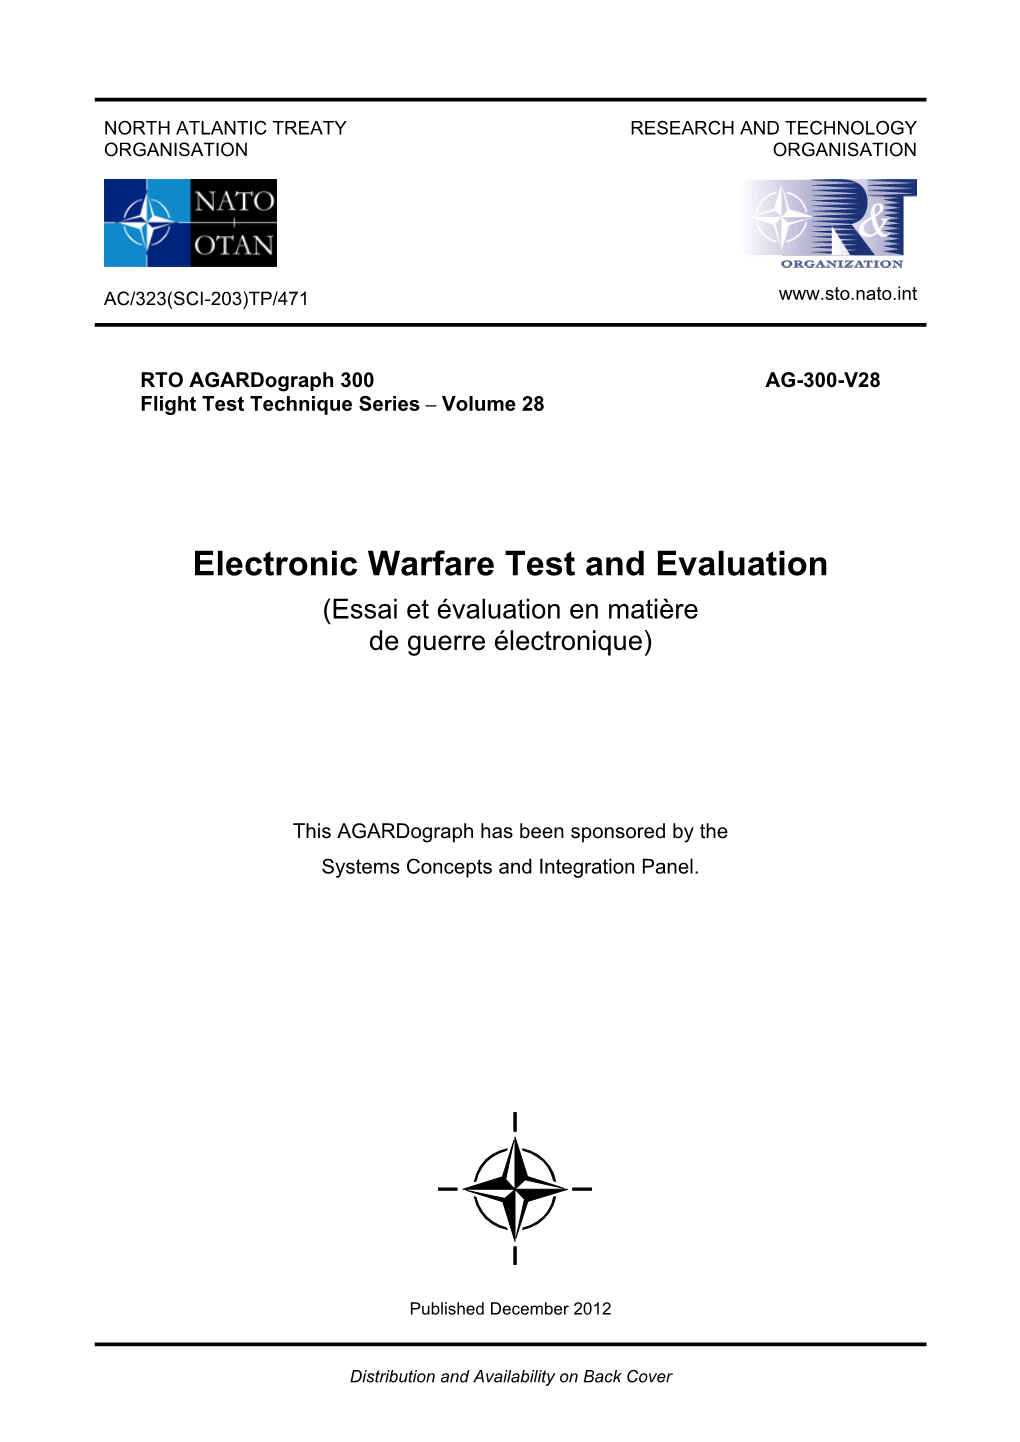 Electronic Warfare Test and Evaluation (Essai Et Évaluation En Matière De Guerre Électronique)